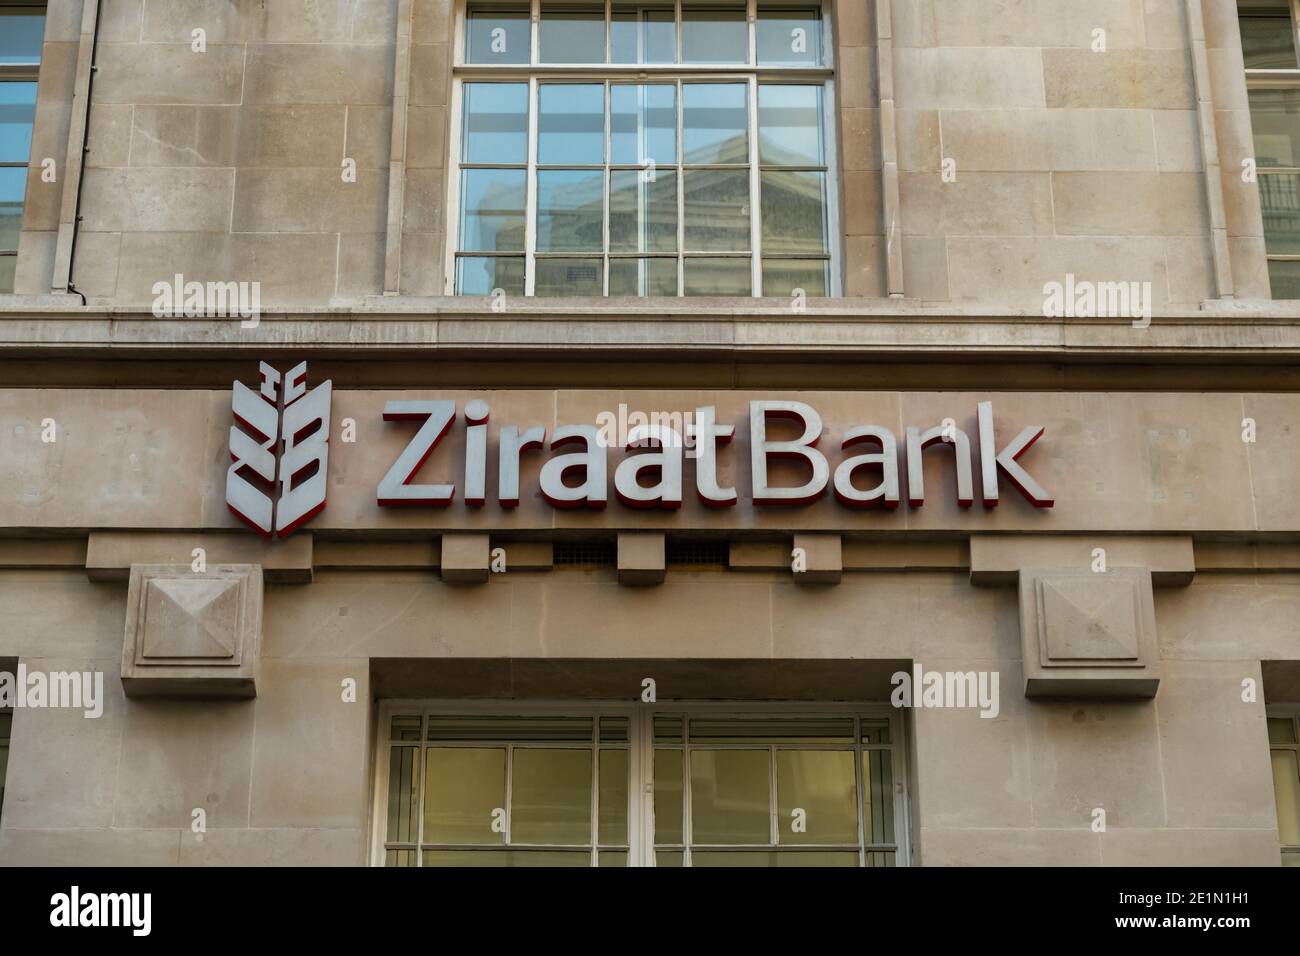 Londres- Banco Ziraat, Ciudad de Londres, sucursal de un gran banco turco Foto de stock